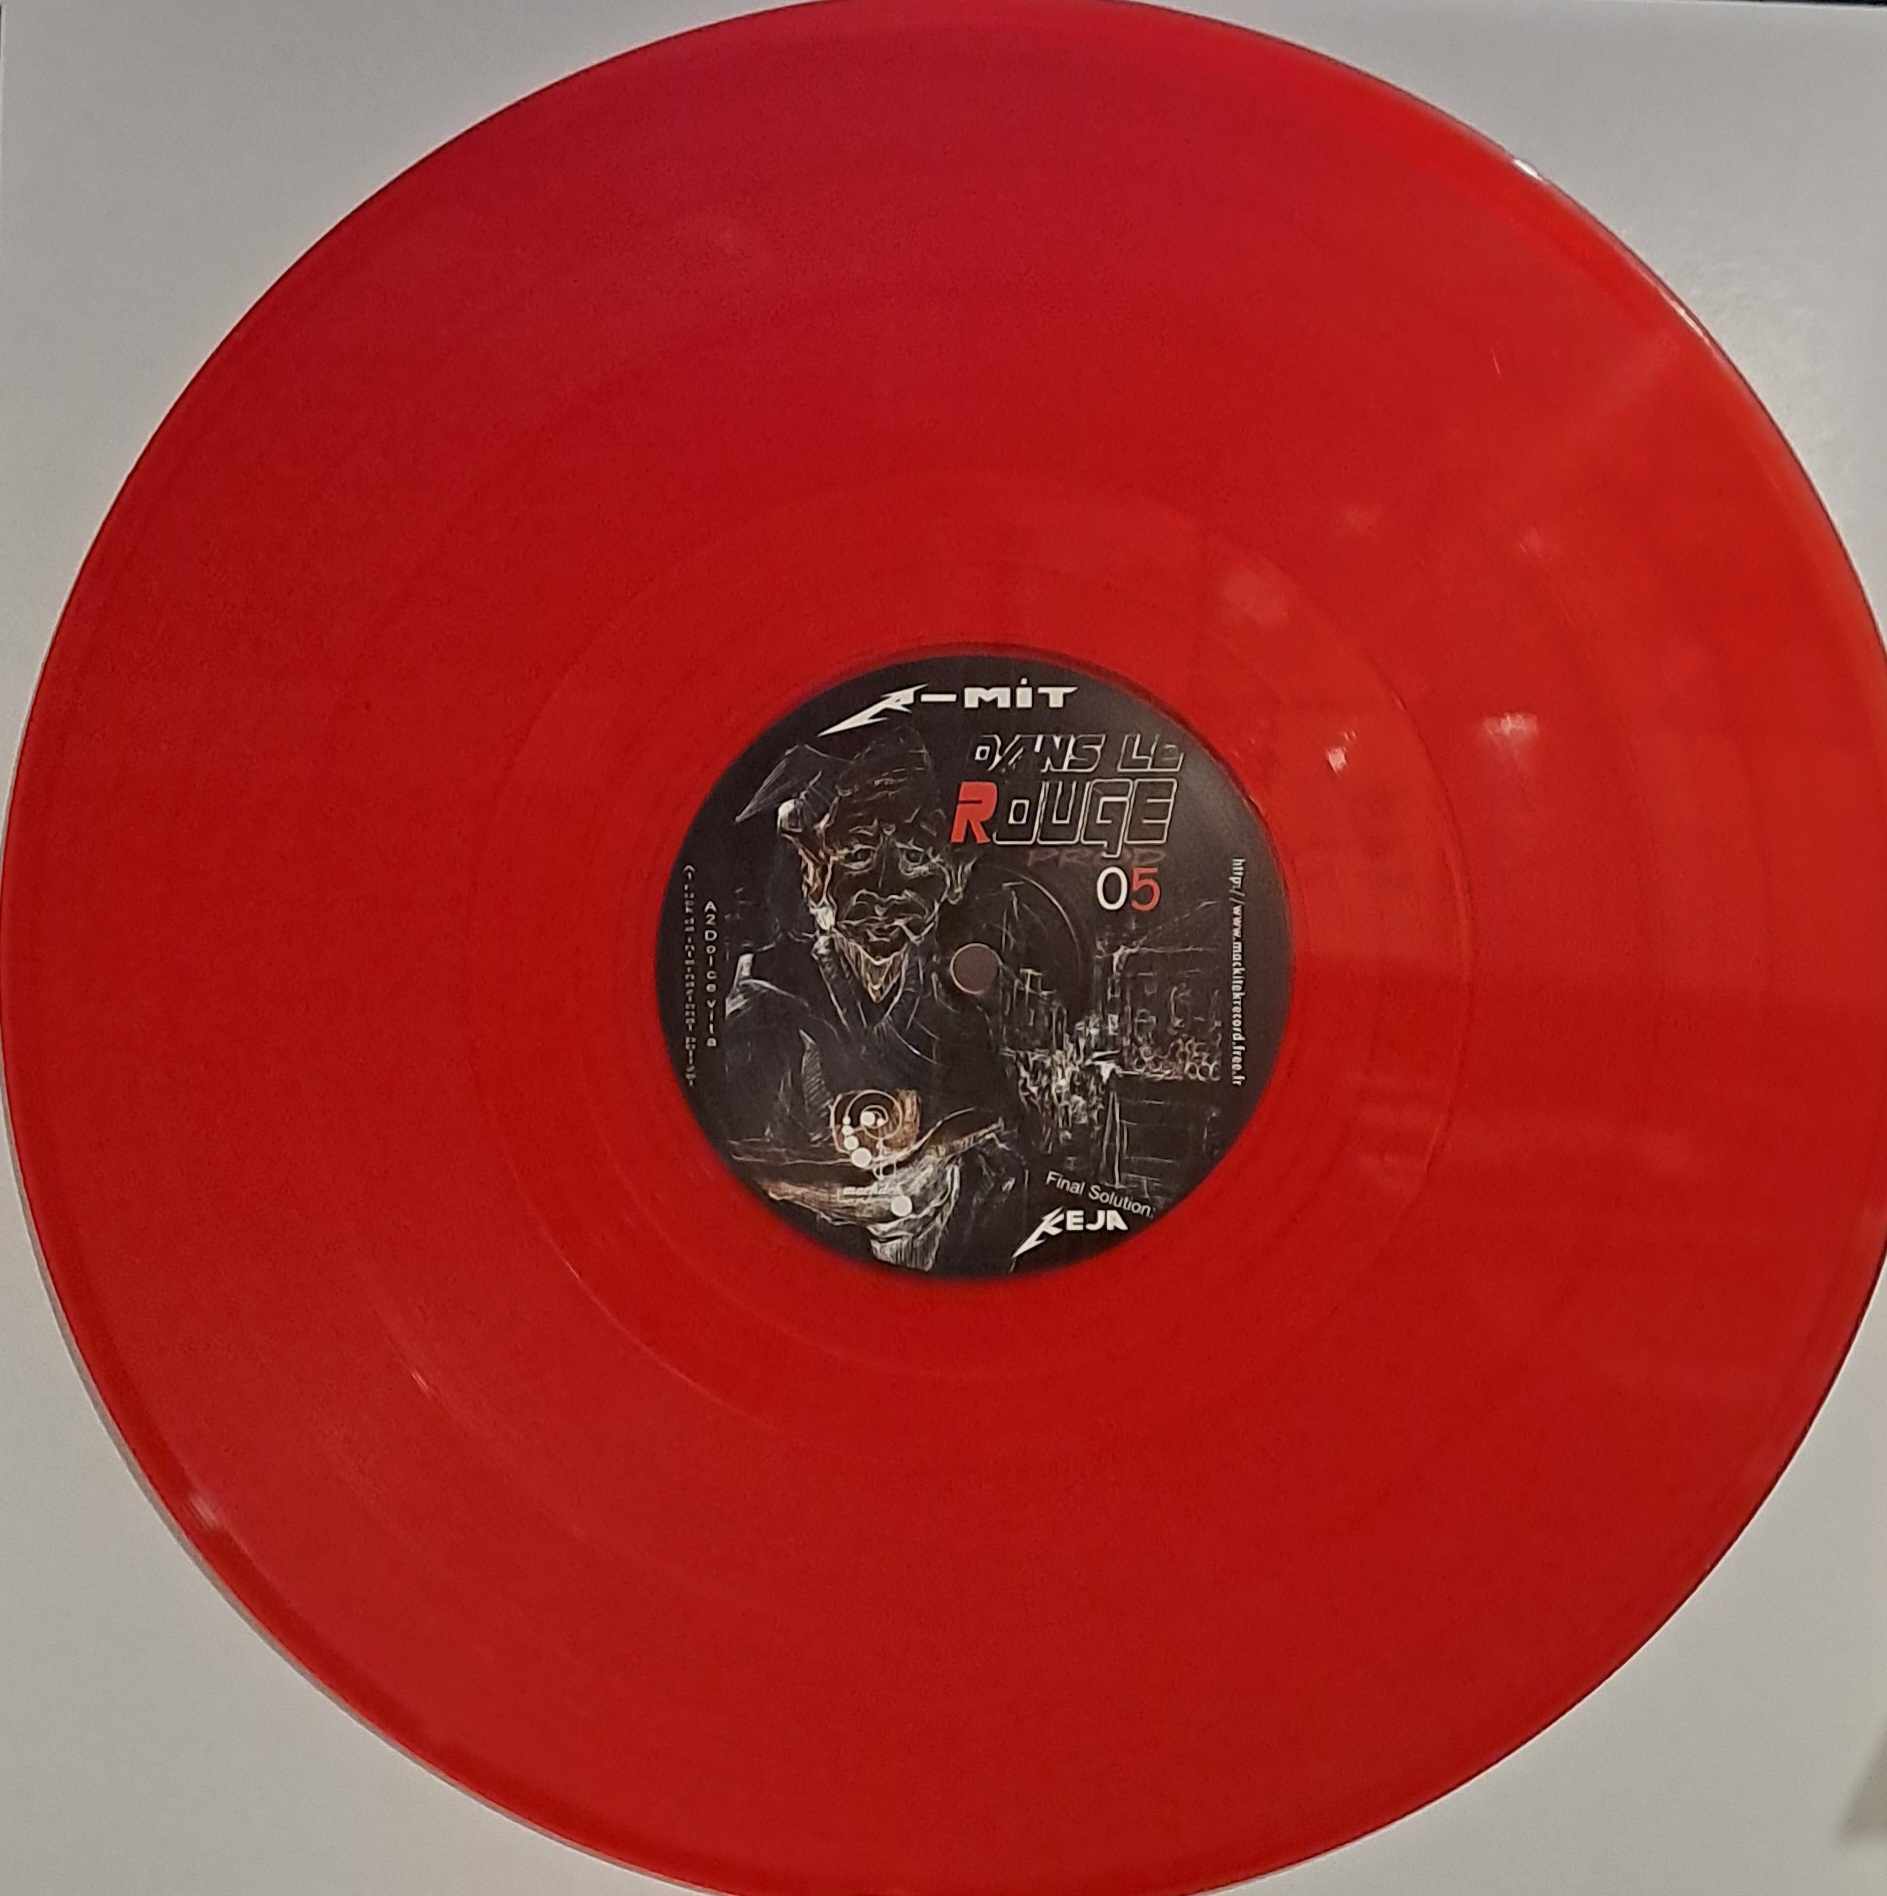 Dans Le Rouge 05 - vinyle freetekno